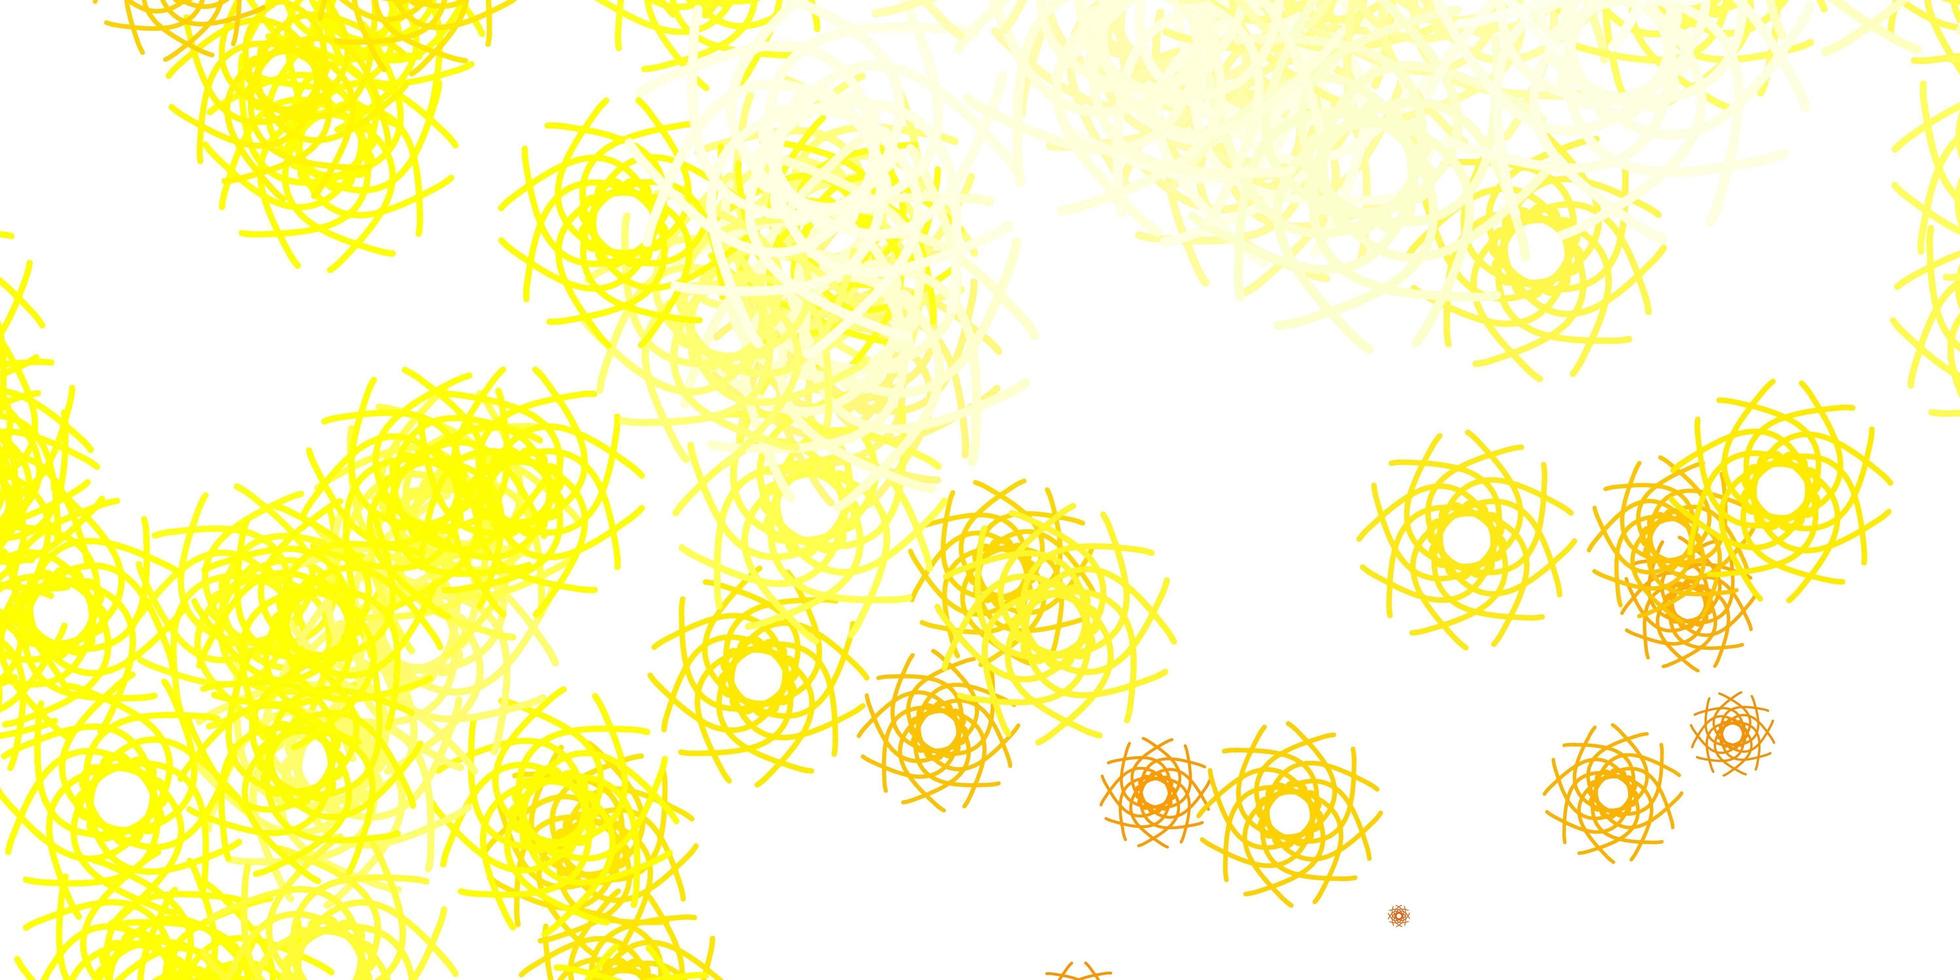 sfondo vettoriale giallo chiaro con forme casuali.